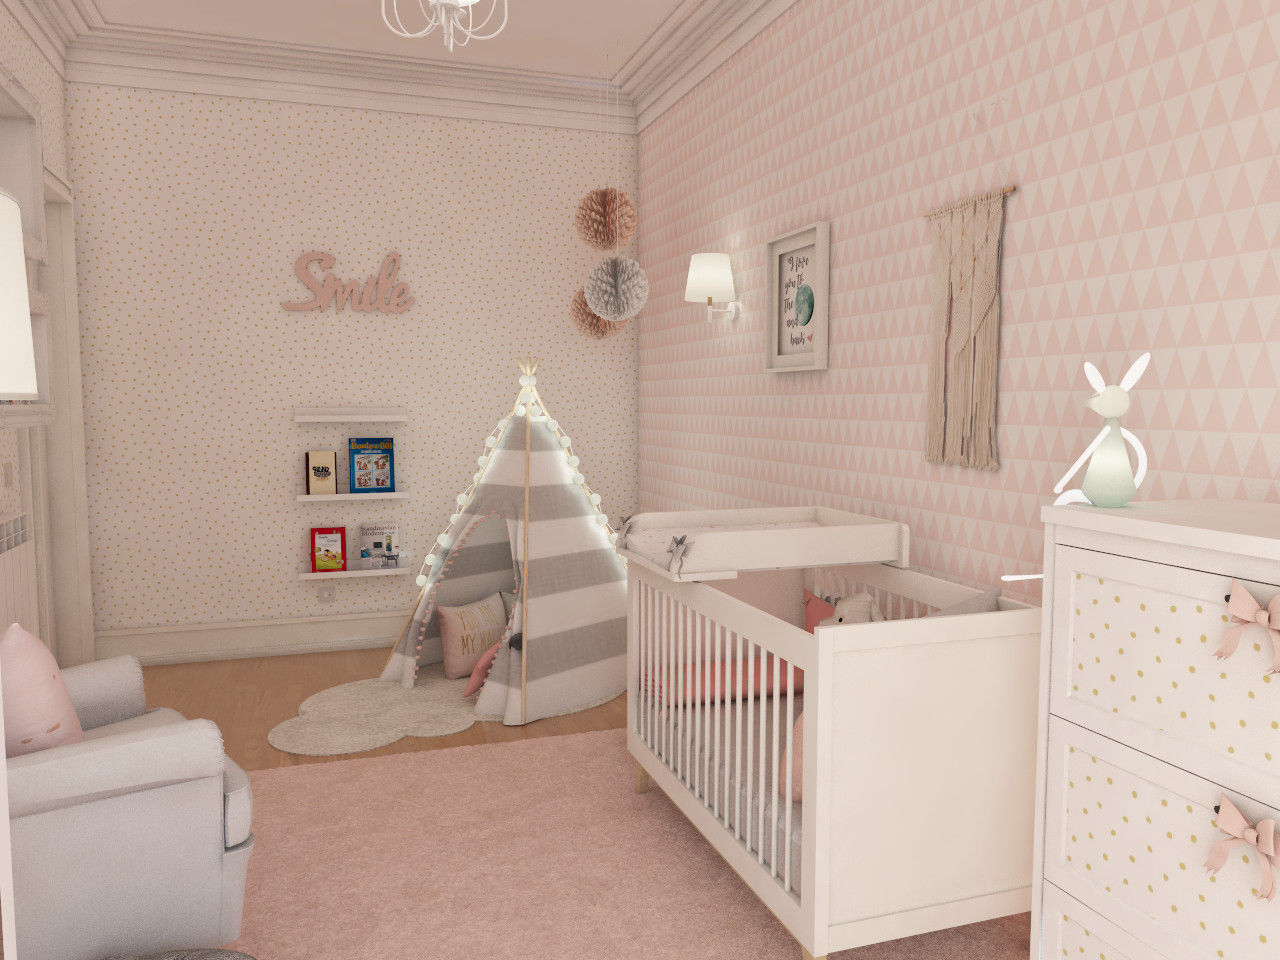 Projeto tranquilo de decoração de quarto de bebé , The Spacealist - Arquitectura e Interiores The Spacealist - Arquitectura e Interiores Chambre bébé